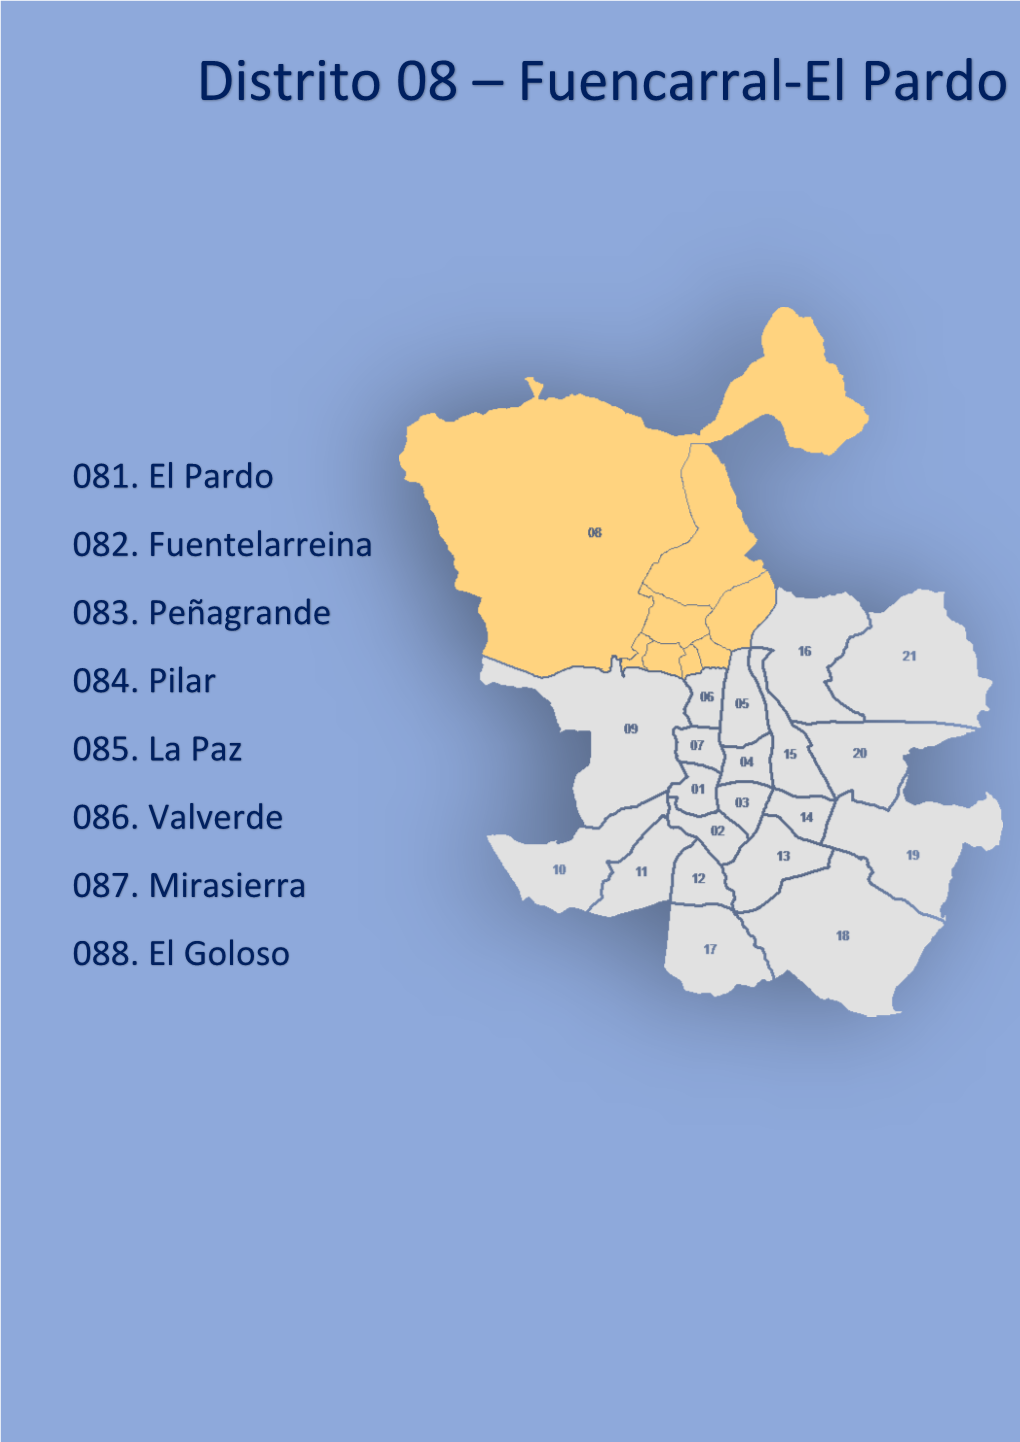 Distrito 08 – Fuencarral-El Pardo